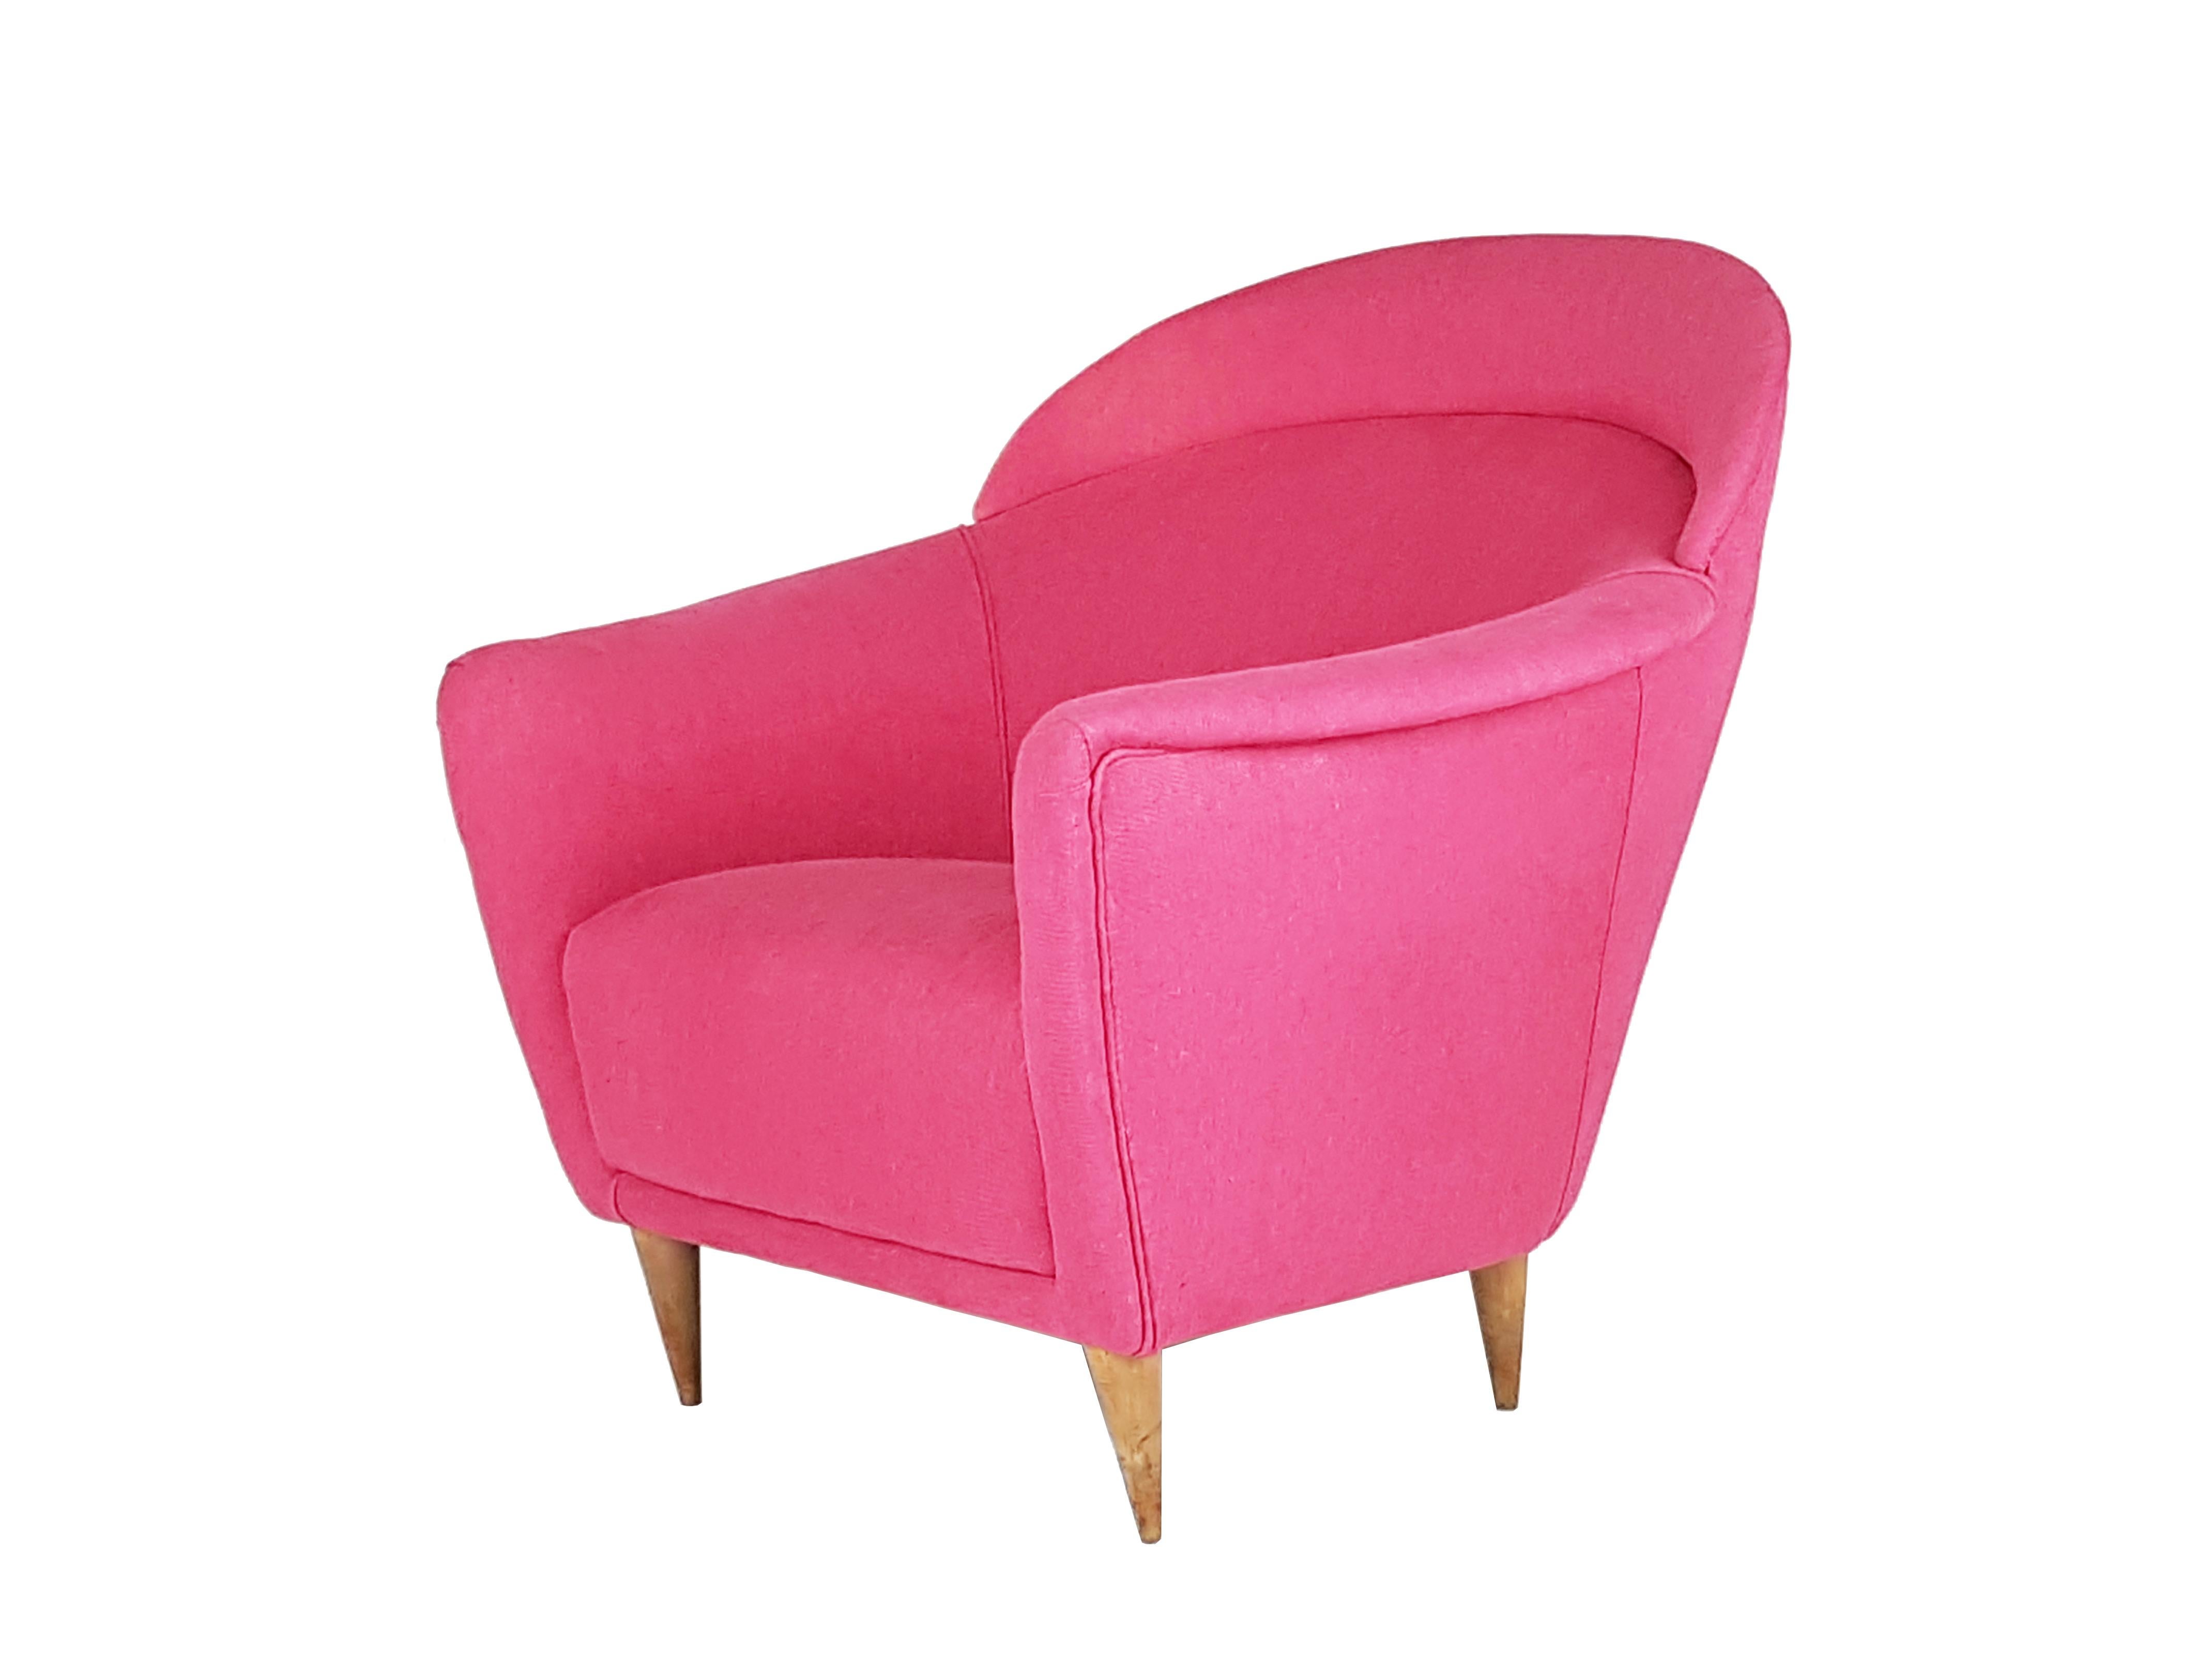 Ce magnifique fauteuil à coussins a été conçu et produit dans les années 1950. Sa forme, son style et sa qualité rappellent des produits contemporains similaires conçus par Gio Ponti ou Ico Parisi. Le fauteuil a été retapissé avec un tissu 